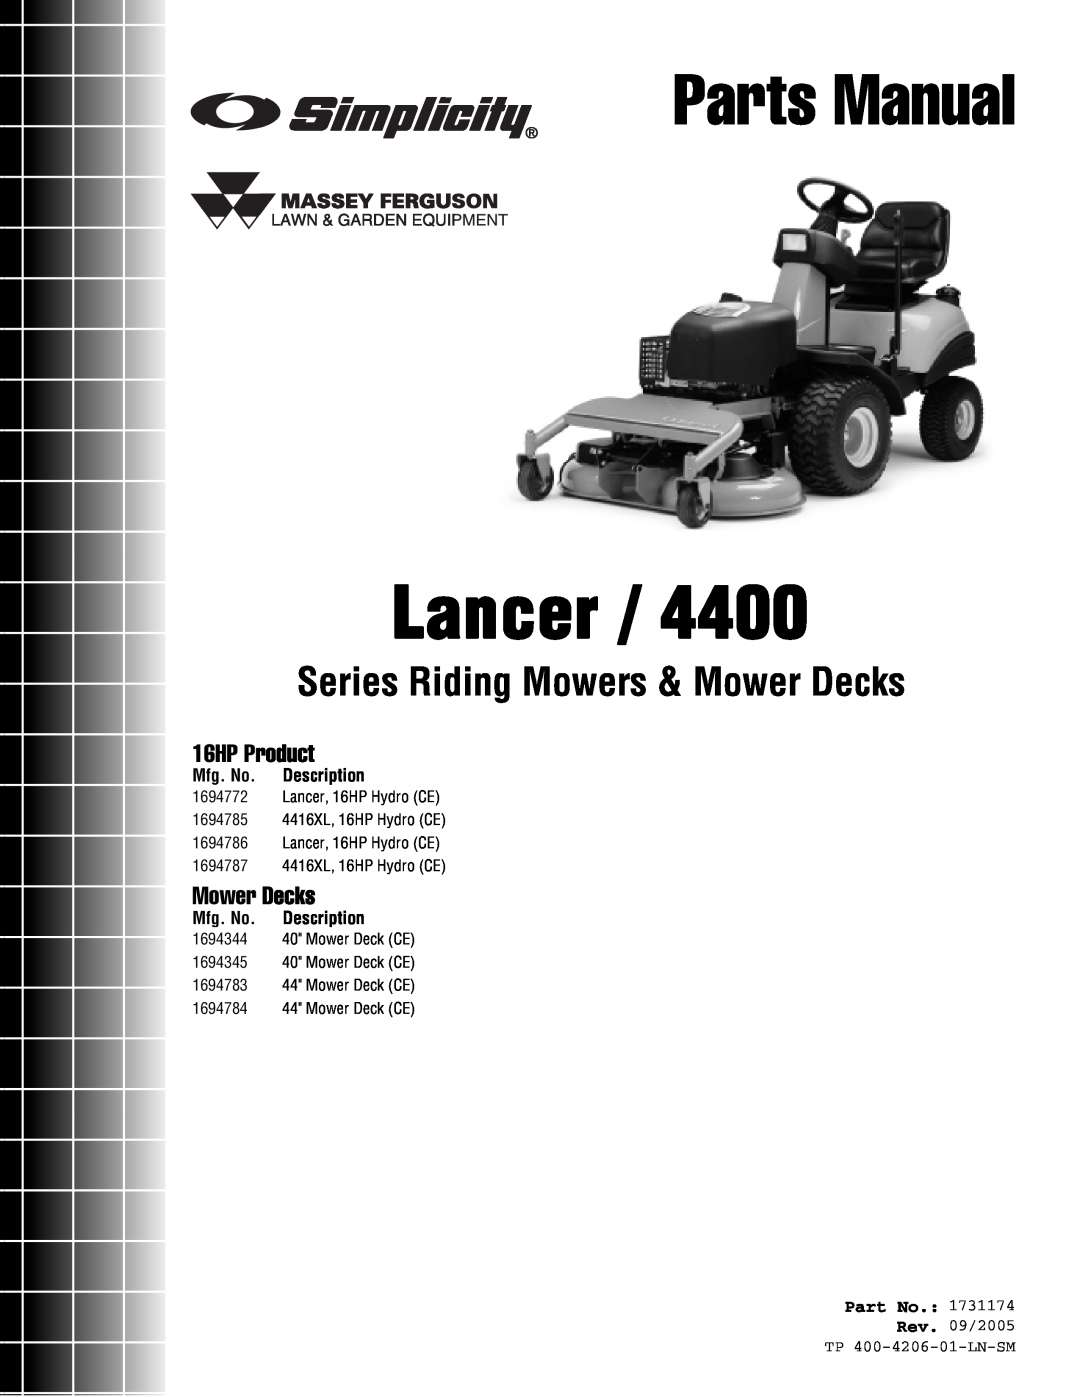 Snapper Lancer / 4400 manual Mfg. No. Description, Rev. 09/2005 TP 400-4206-01-LN-SM, Parts Manual, 16HP Product 